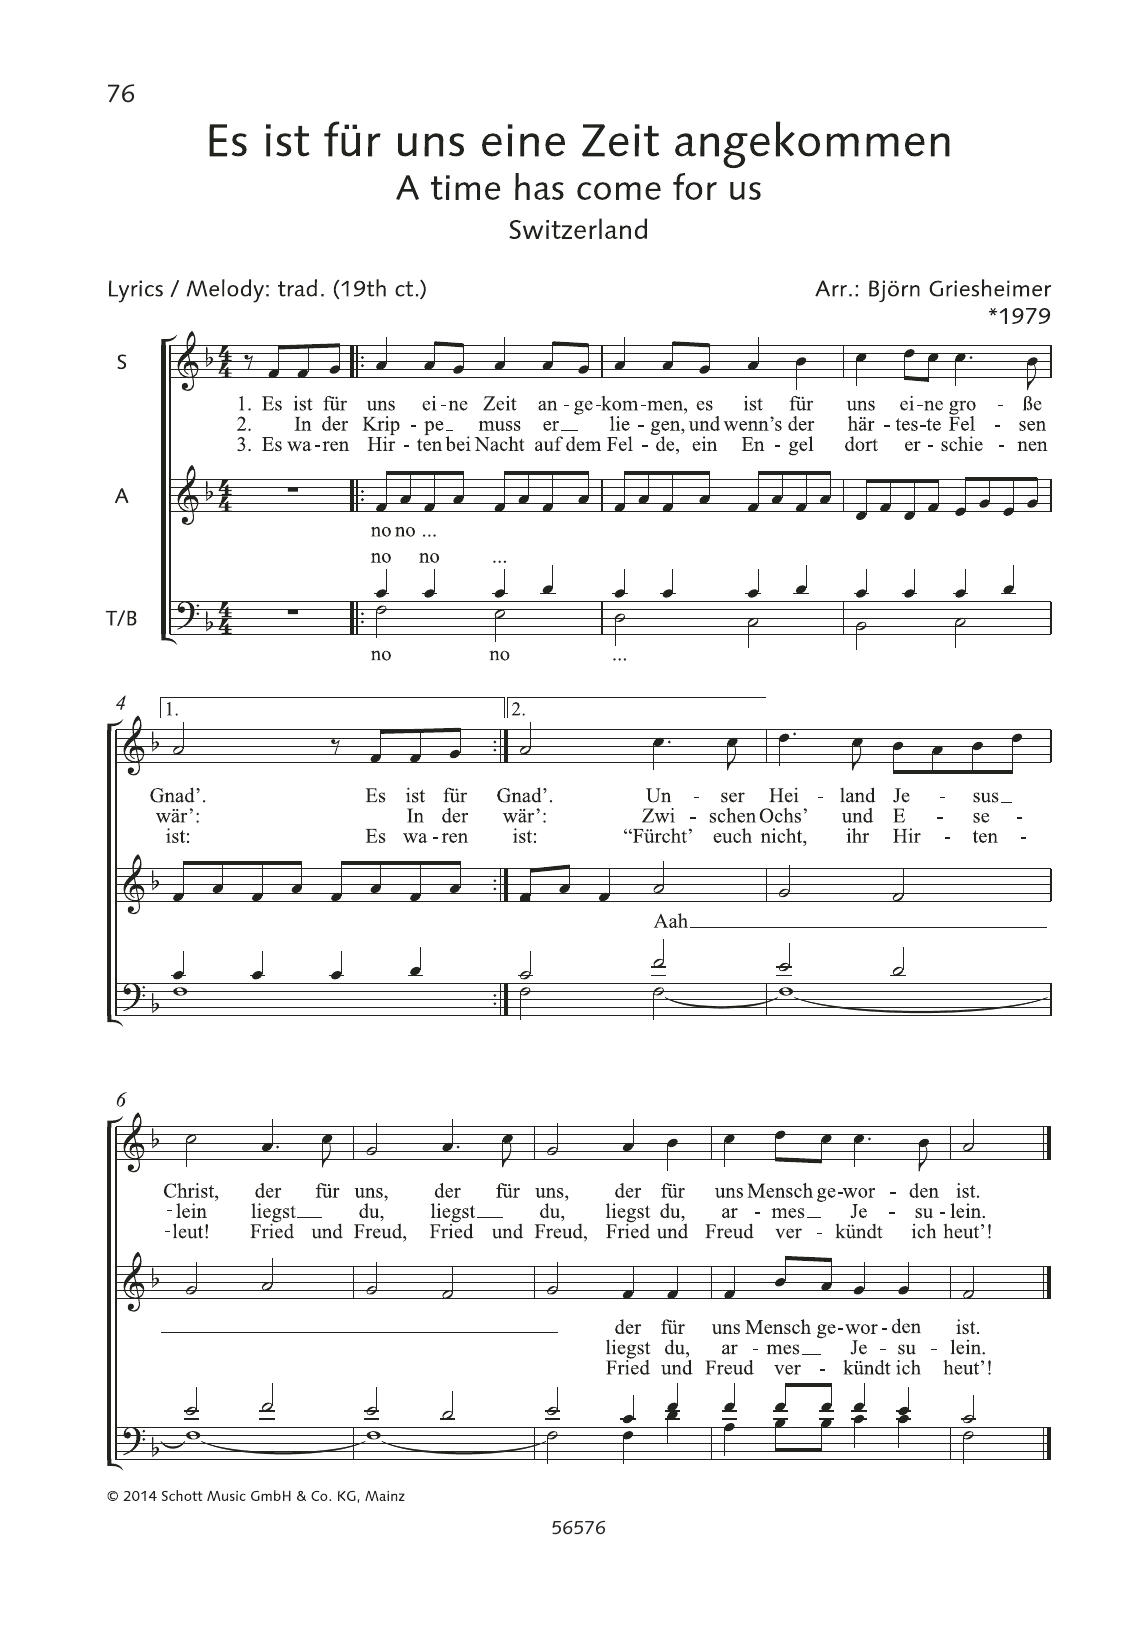 Björn Griesheimer Es ist fur uns eine Zeit angekommen Sheet Music Notes & Chords for Choral - Download or Print PDF